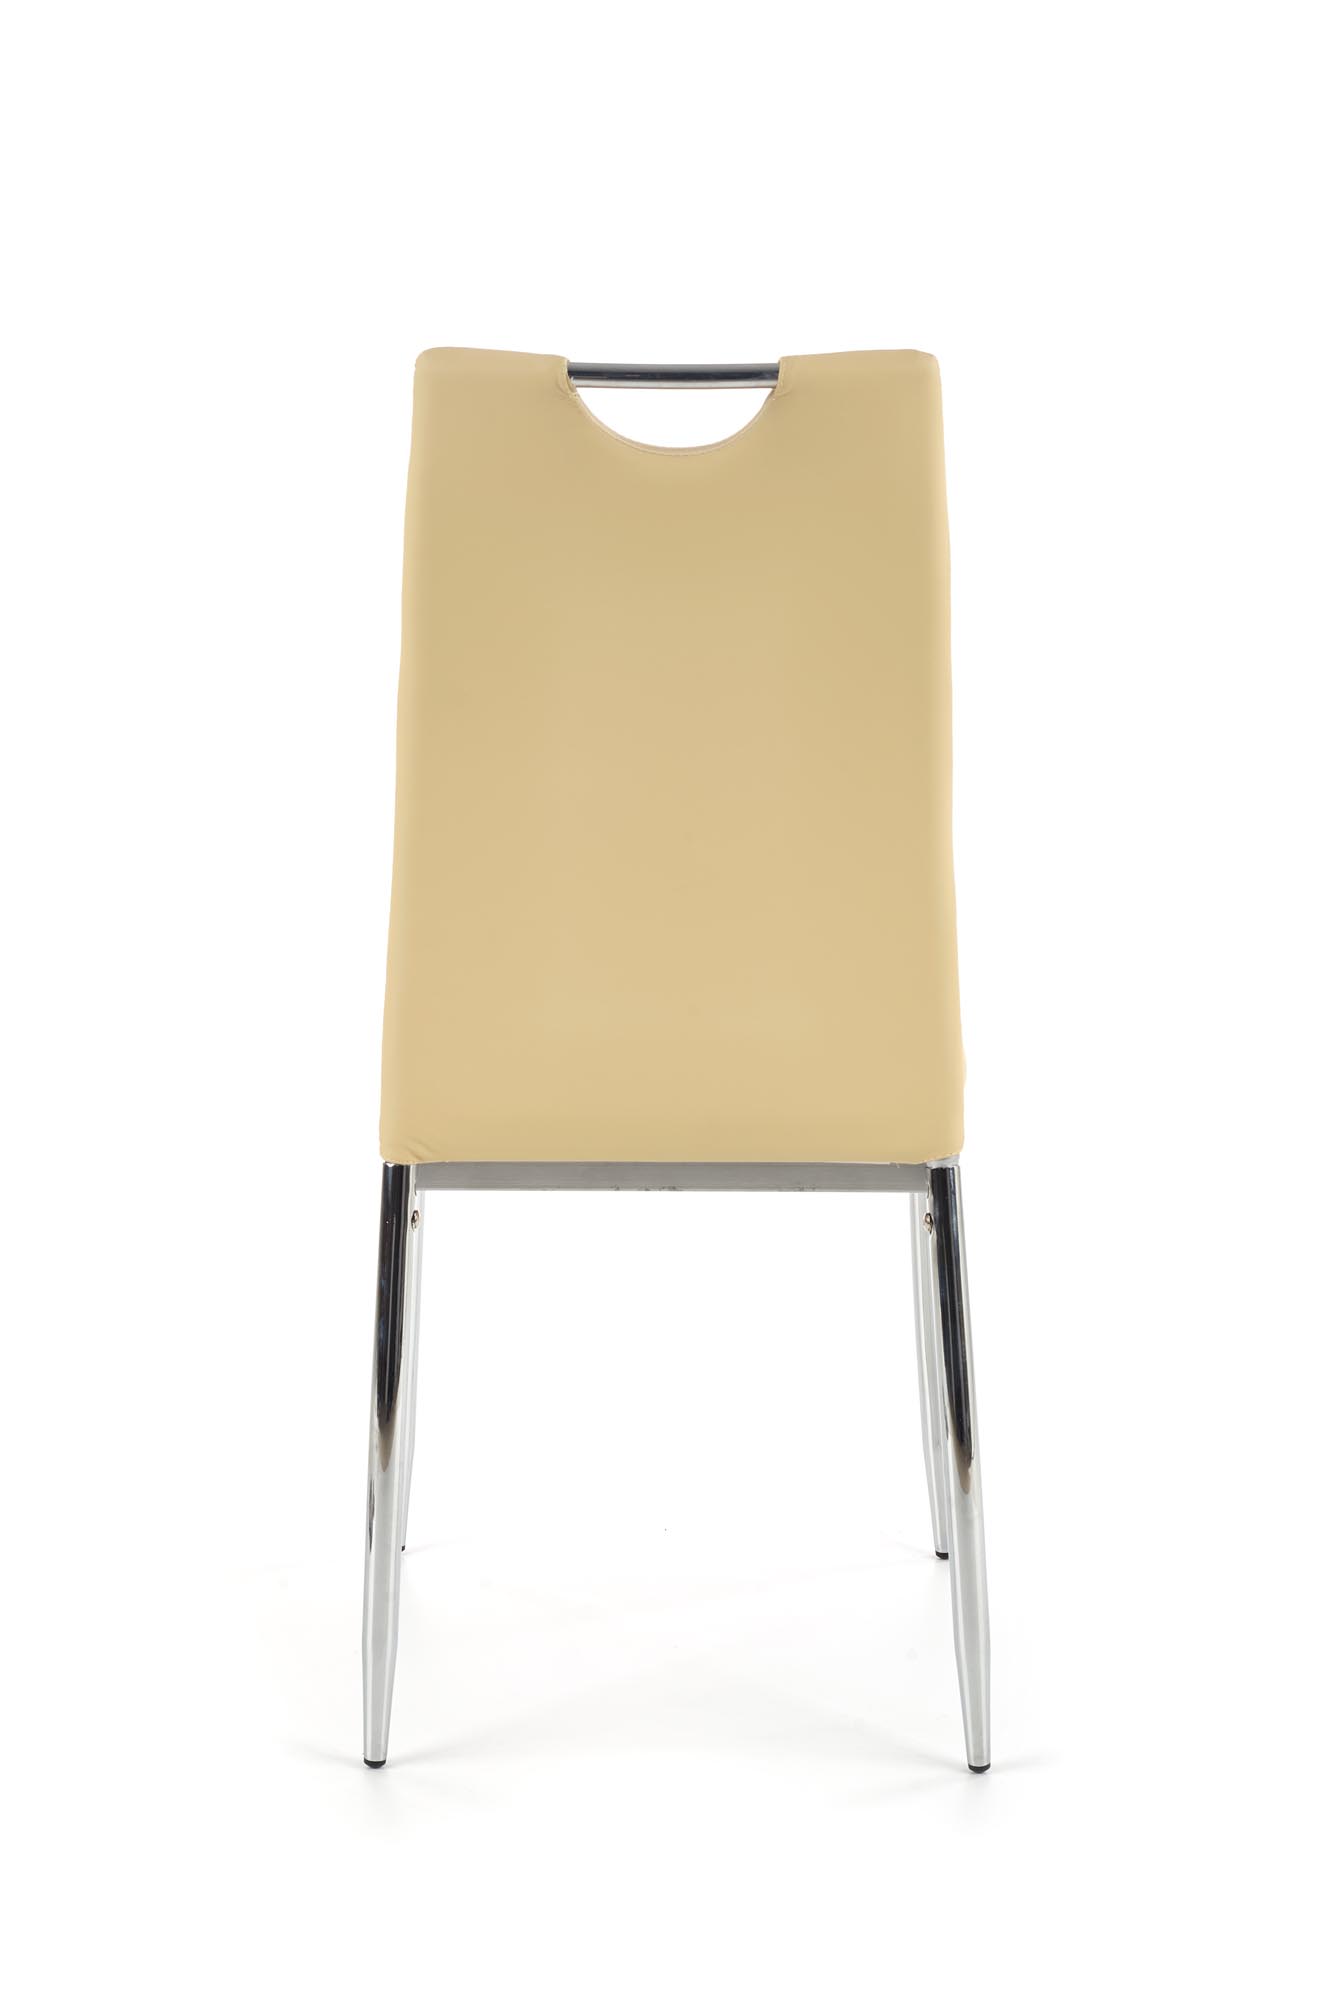 K187 Židle béžová k187 židle béžový